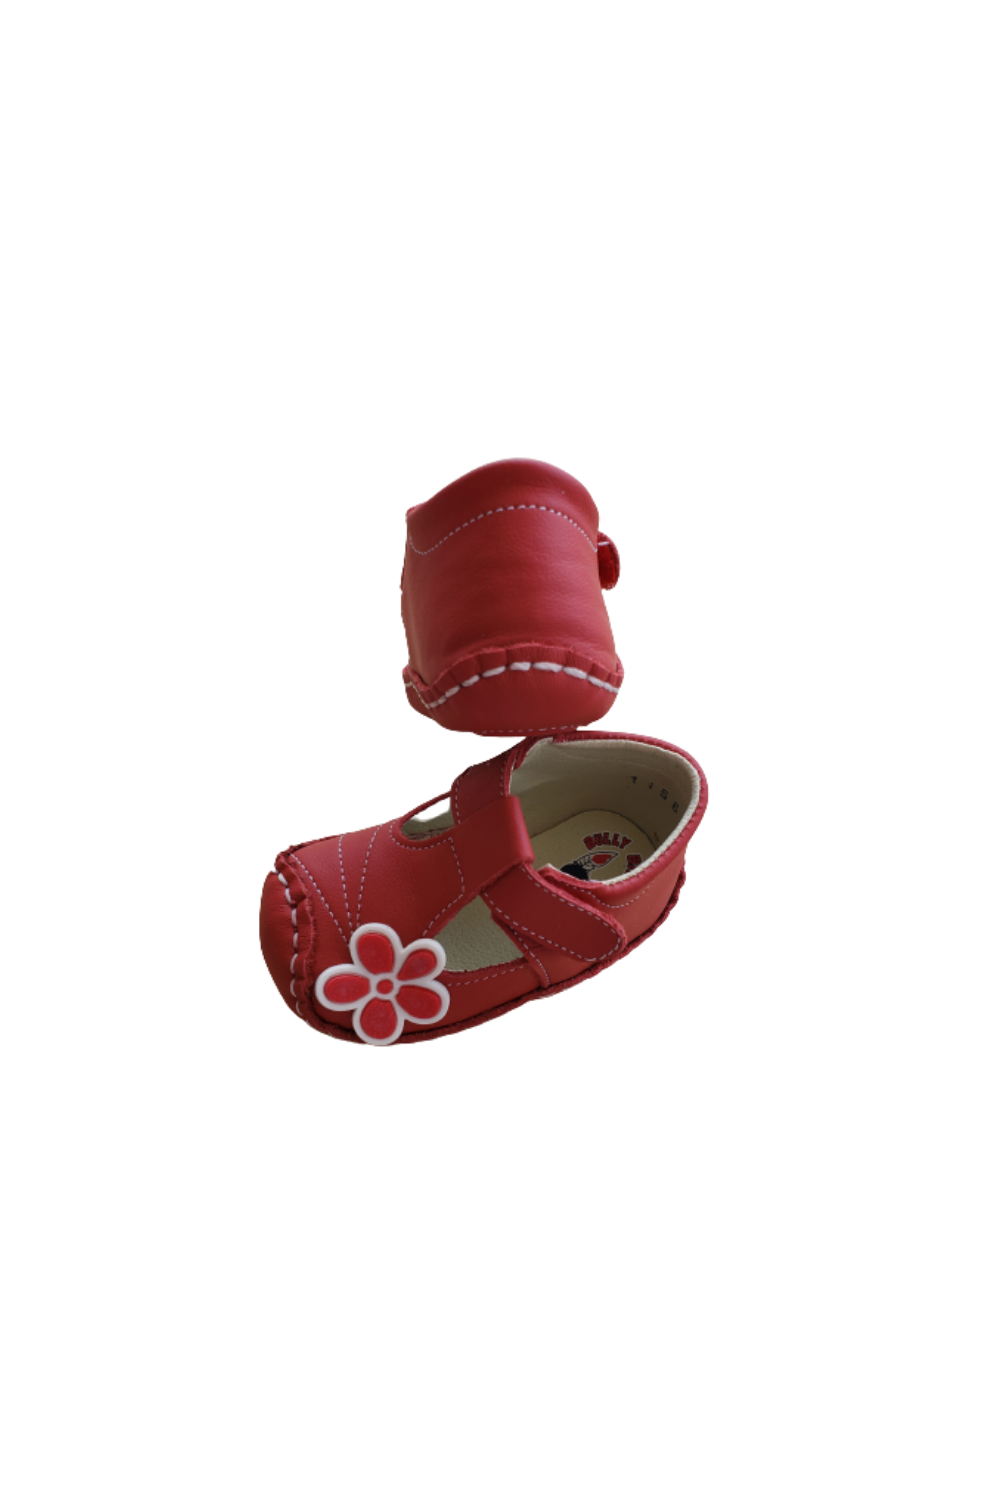 Zapato de bebé niña ROJO/FLOR